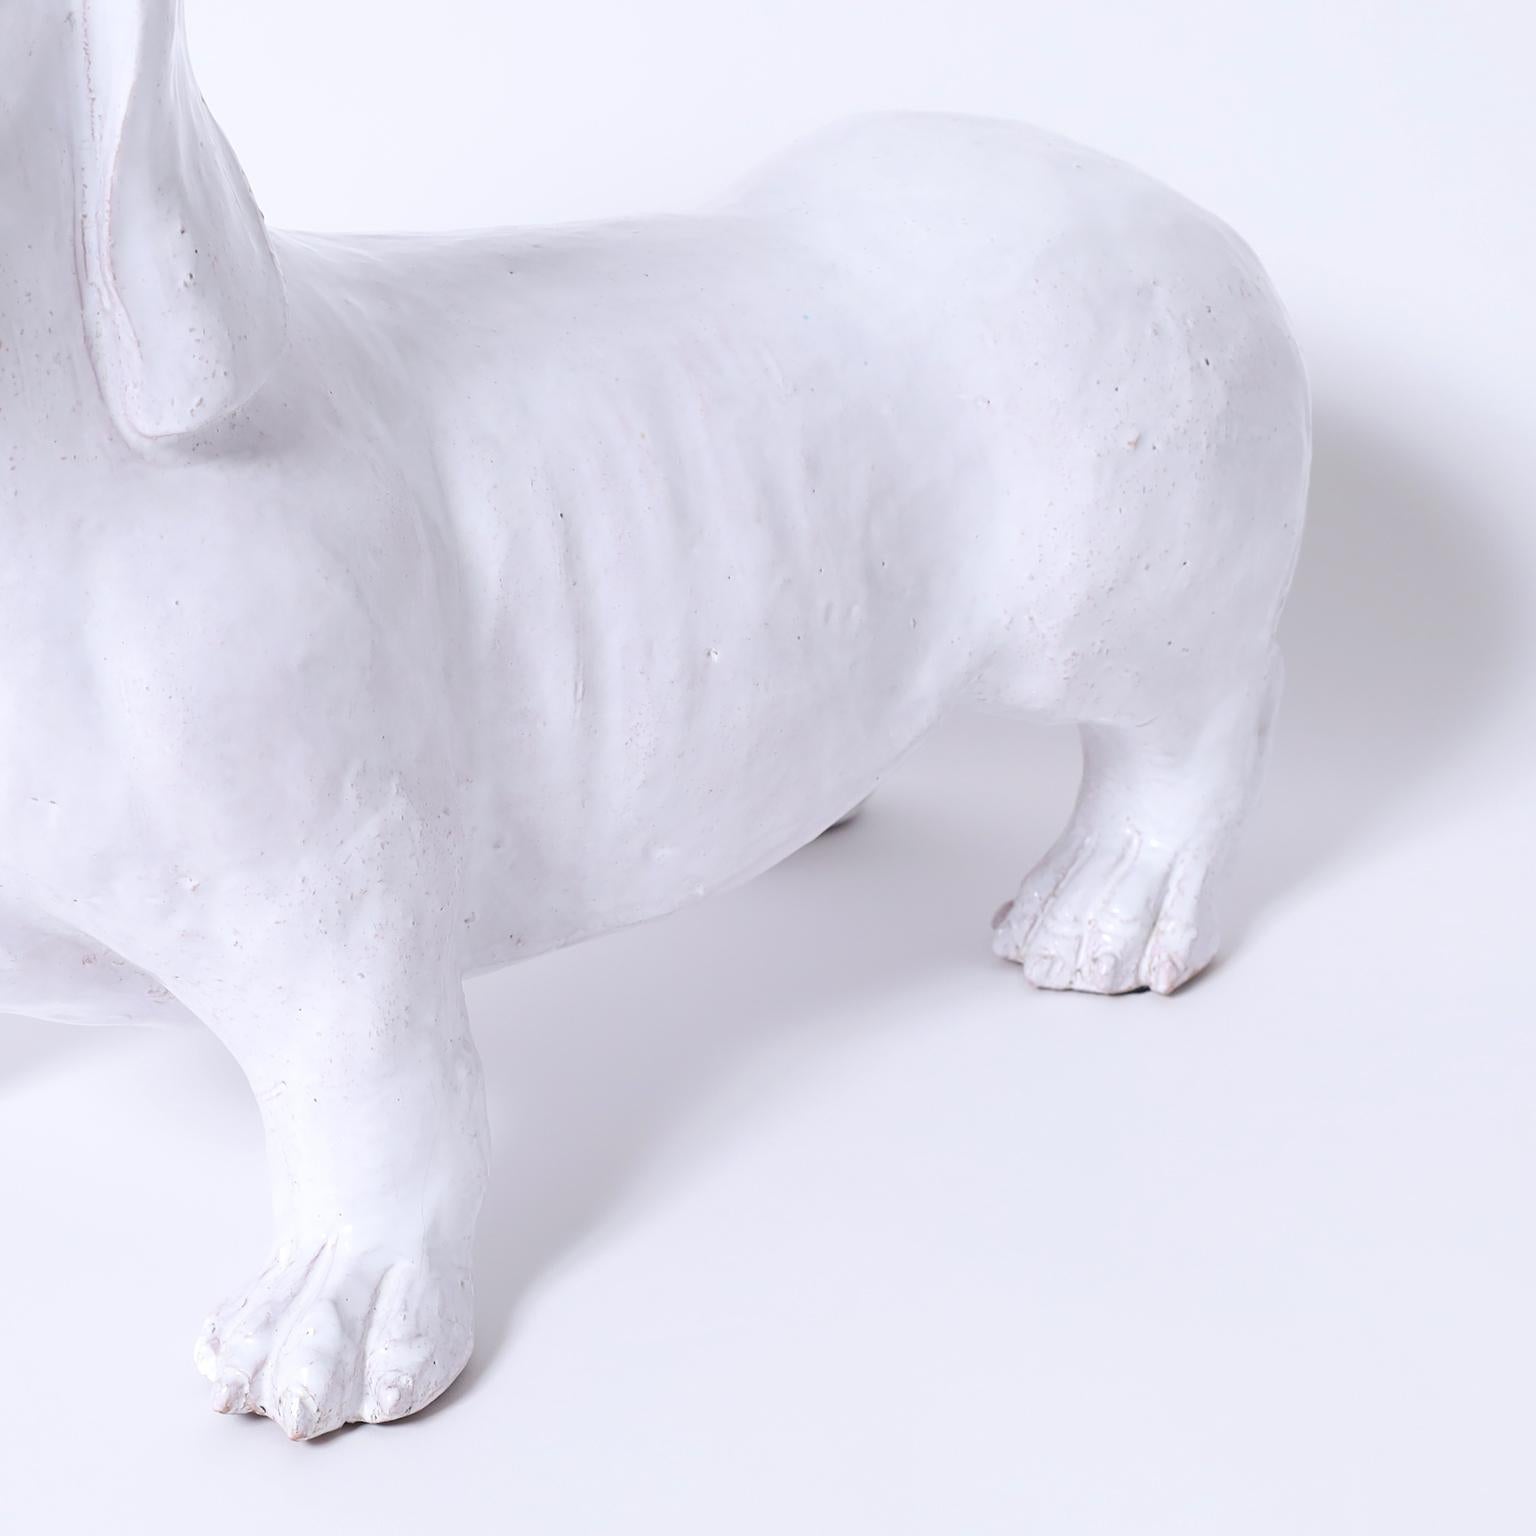 Teckel ou chien en terre cuite italienne à glaçage blanc, de forme réaliste, prêt à être sauvé.